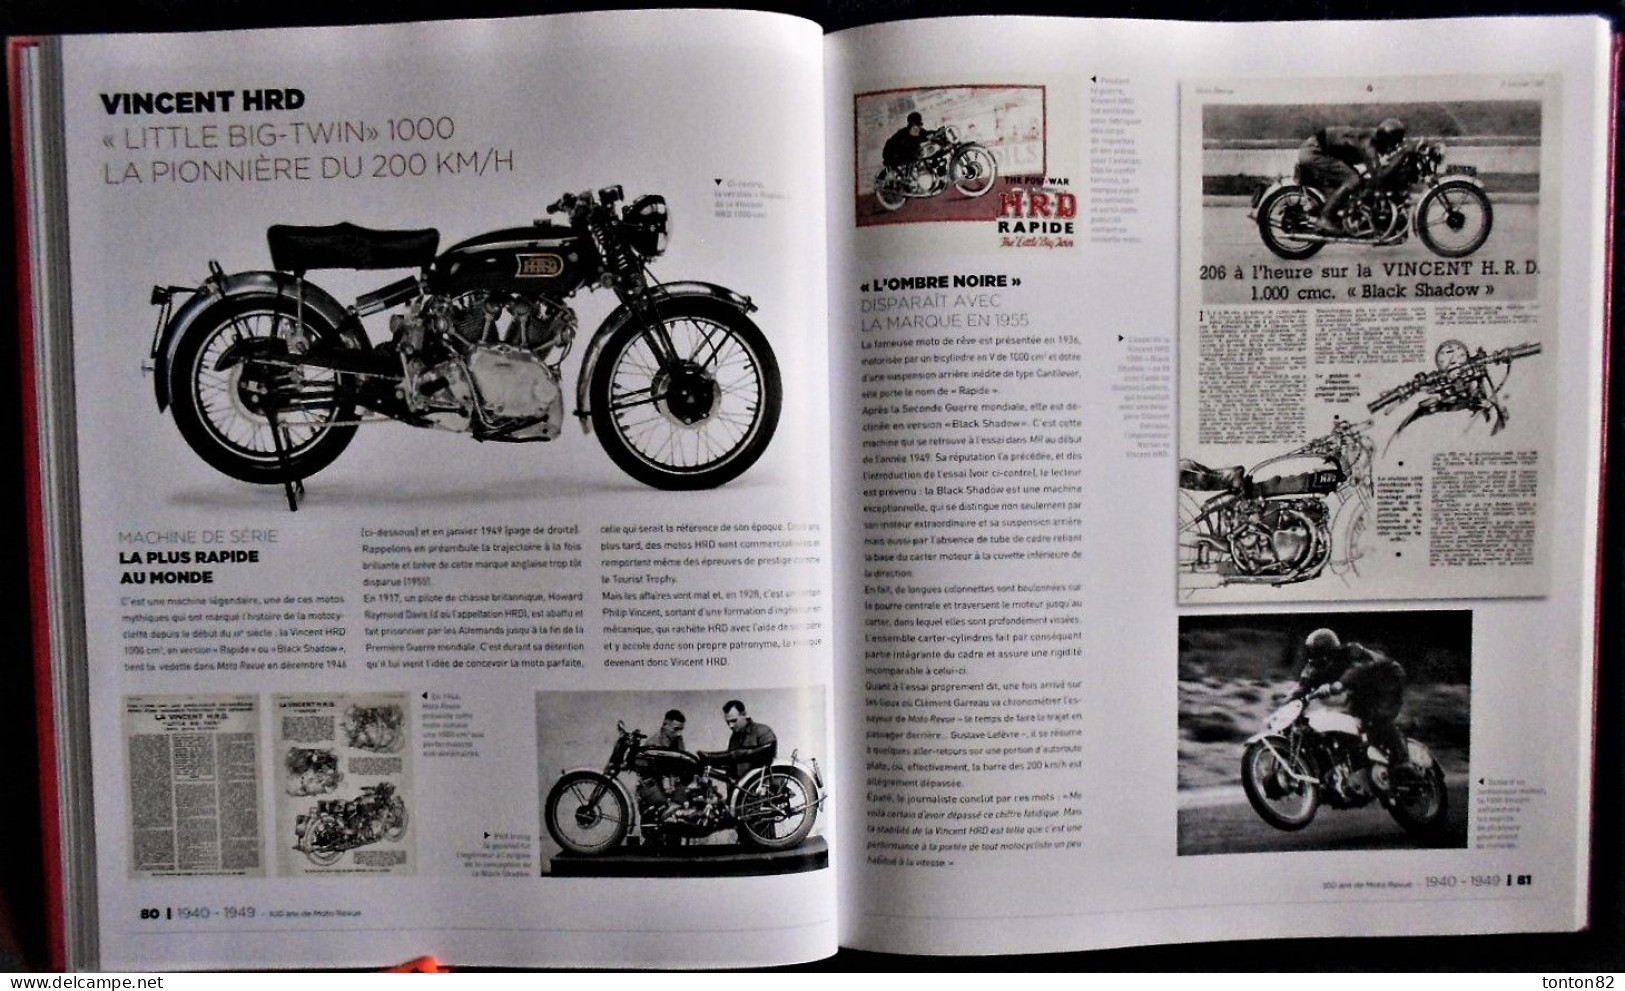 Christian Batteux - MOTO REVUE - 1913 / 2013 - 100 ans de MOTO - Hugo*Image - (2013) - Grand Format : 28.5 x 34 - 2.650g